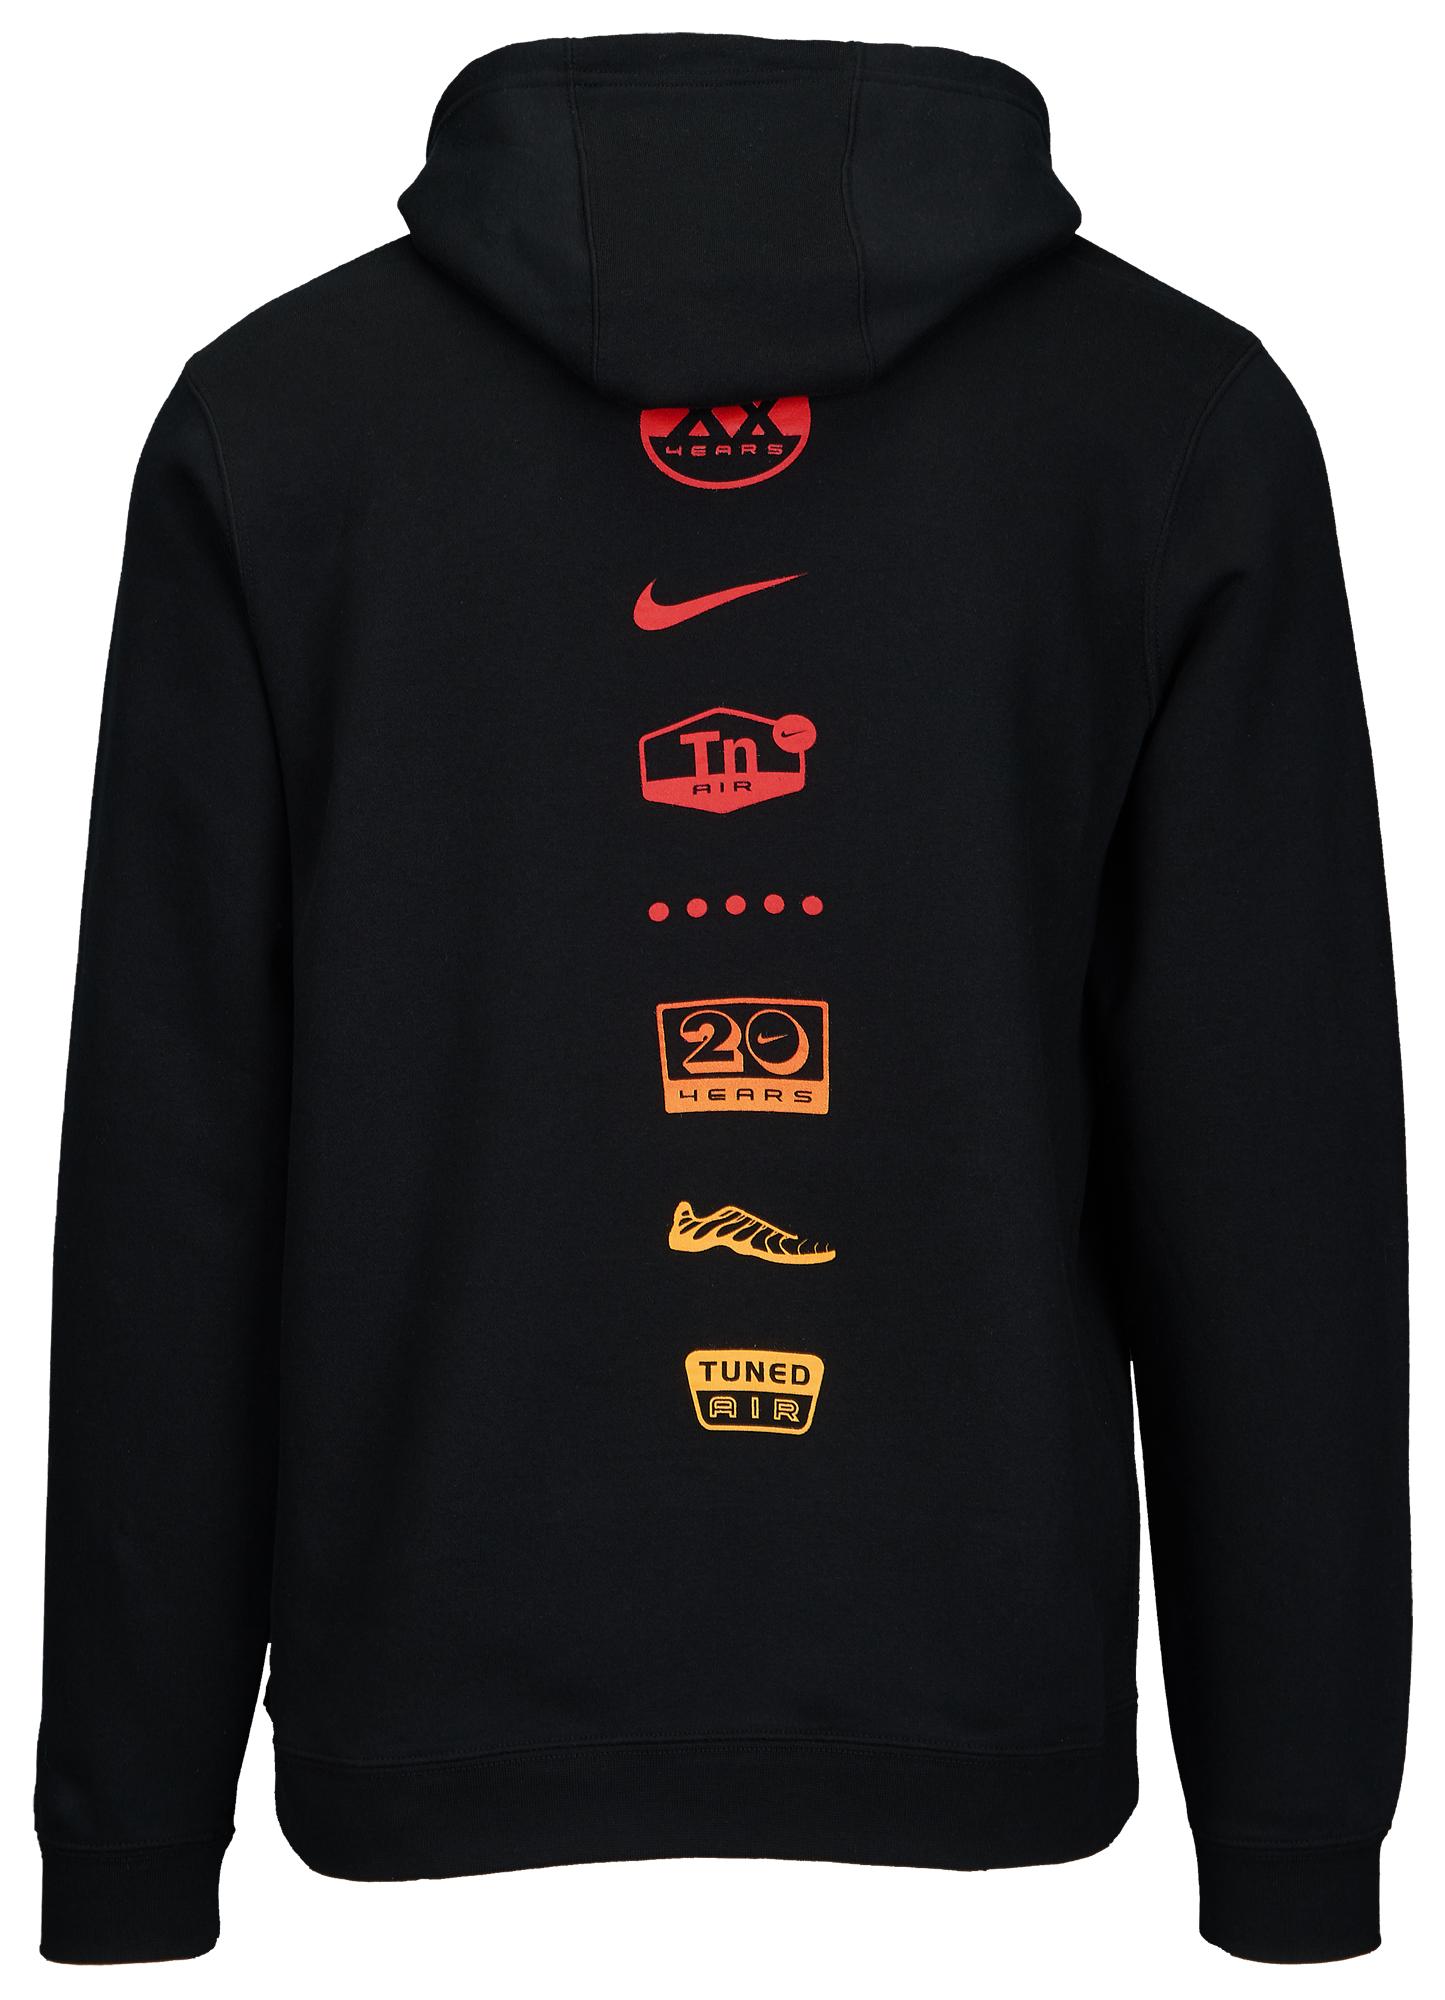 Nike Cotton Tn Air Hoodie in Black/Red 